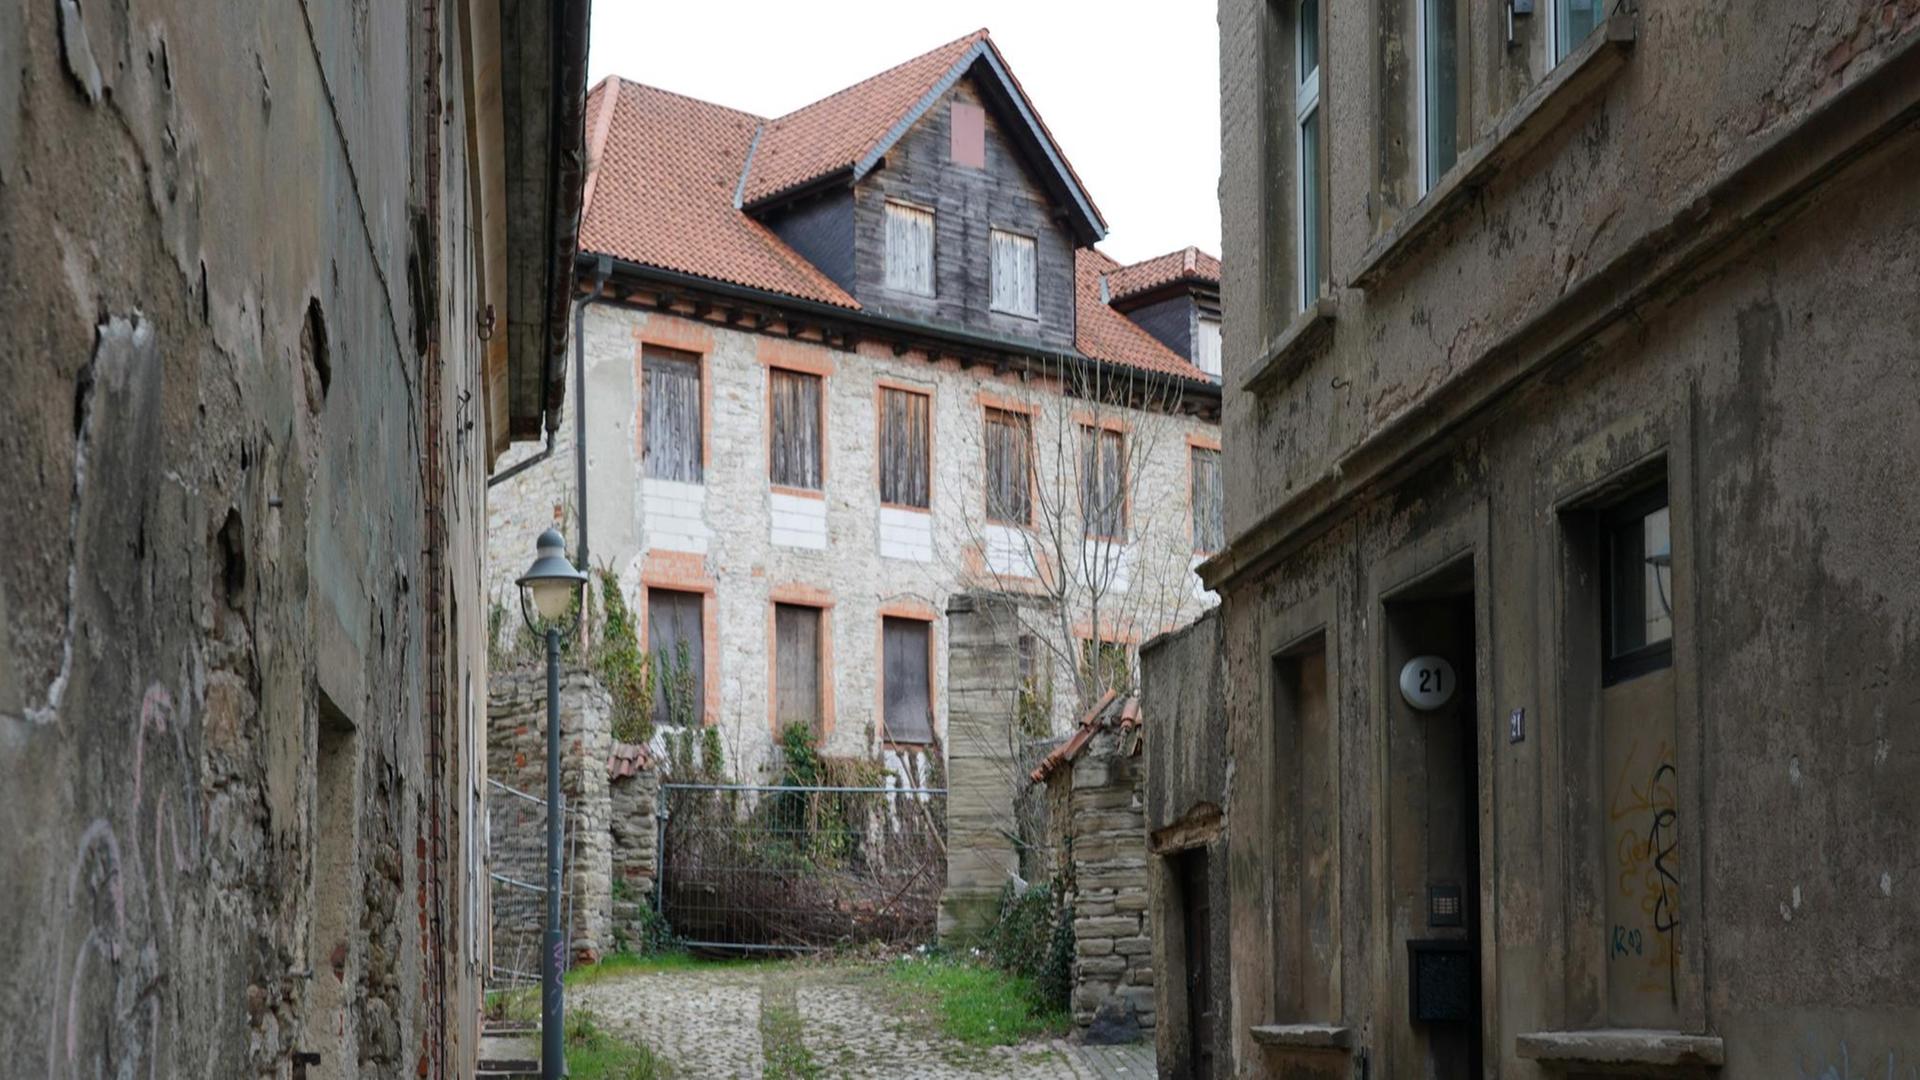 Alte, schöne, aber verfallene und verlassene Häuser am Brühl in Zeitz in Sachsen-Anhalt.